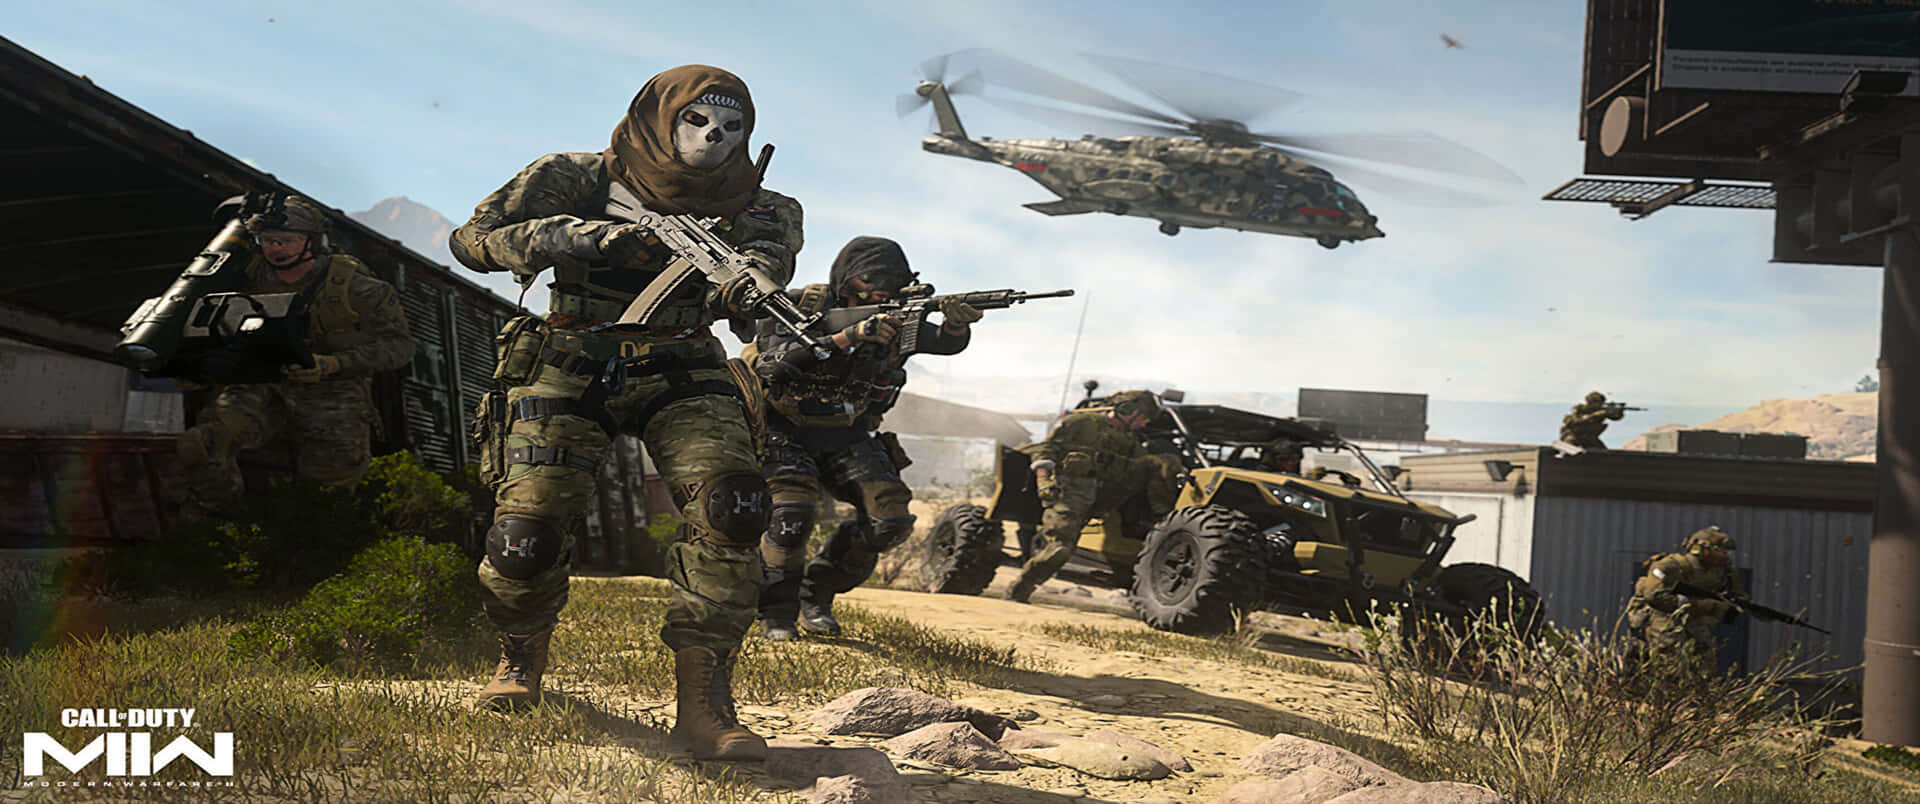 Fondode Pantalla De Call Of Duty Modern Warfare De Simon Riley En 3440x1440p.